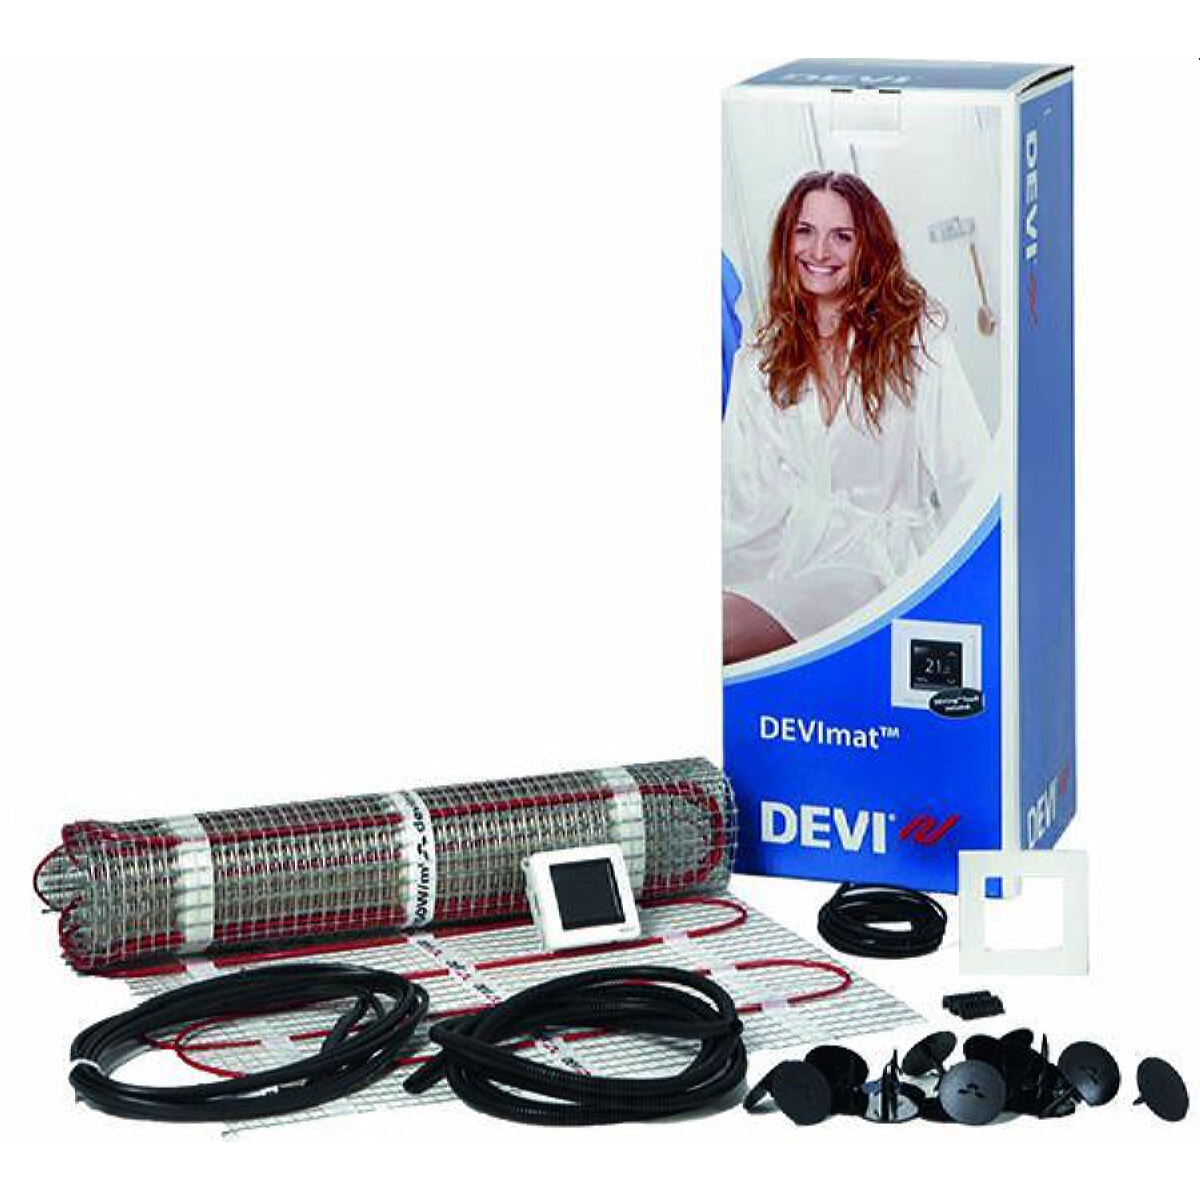 DEVI Dünnbett-Set mit Devireg Touch 450 W professional DTIF 3,0 qm 140F0820